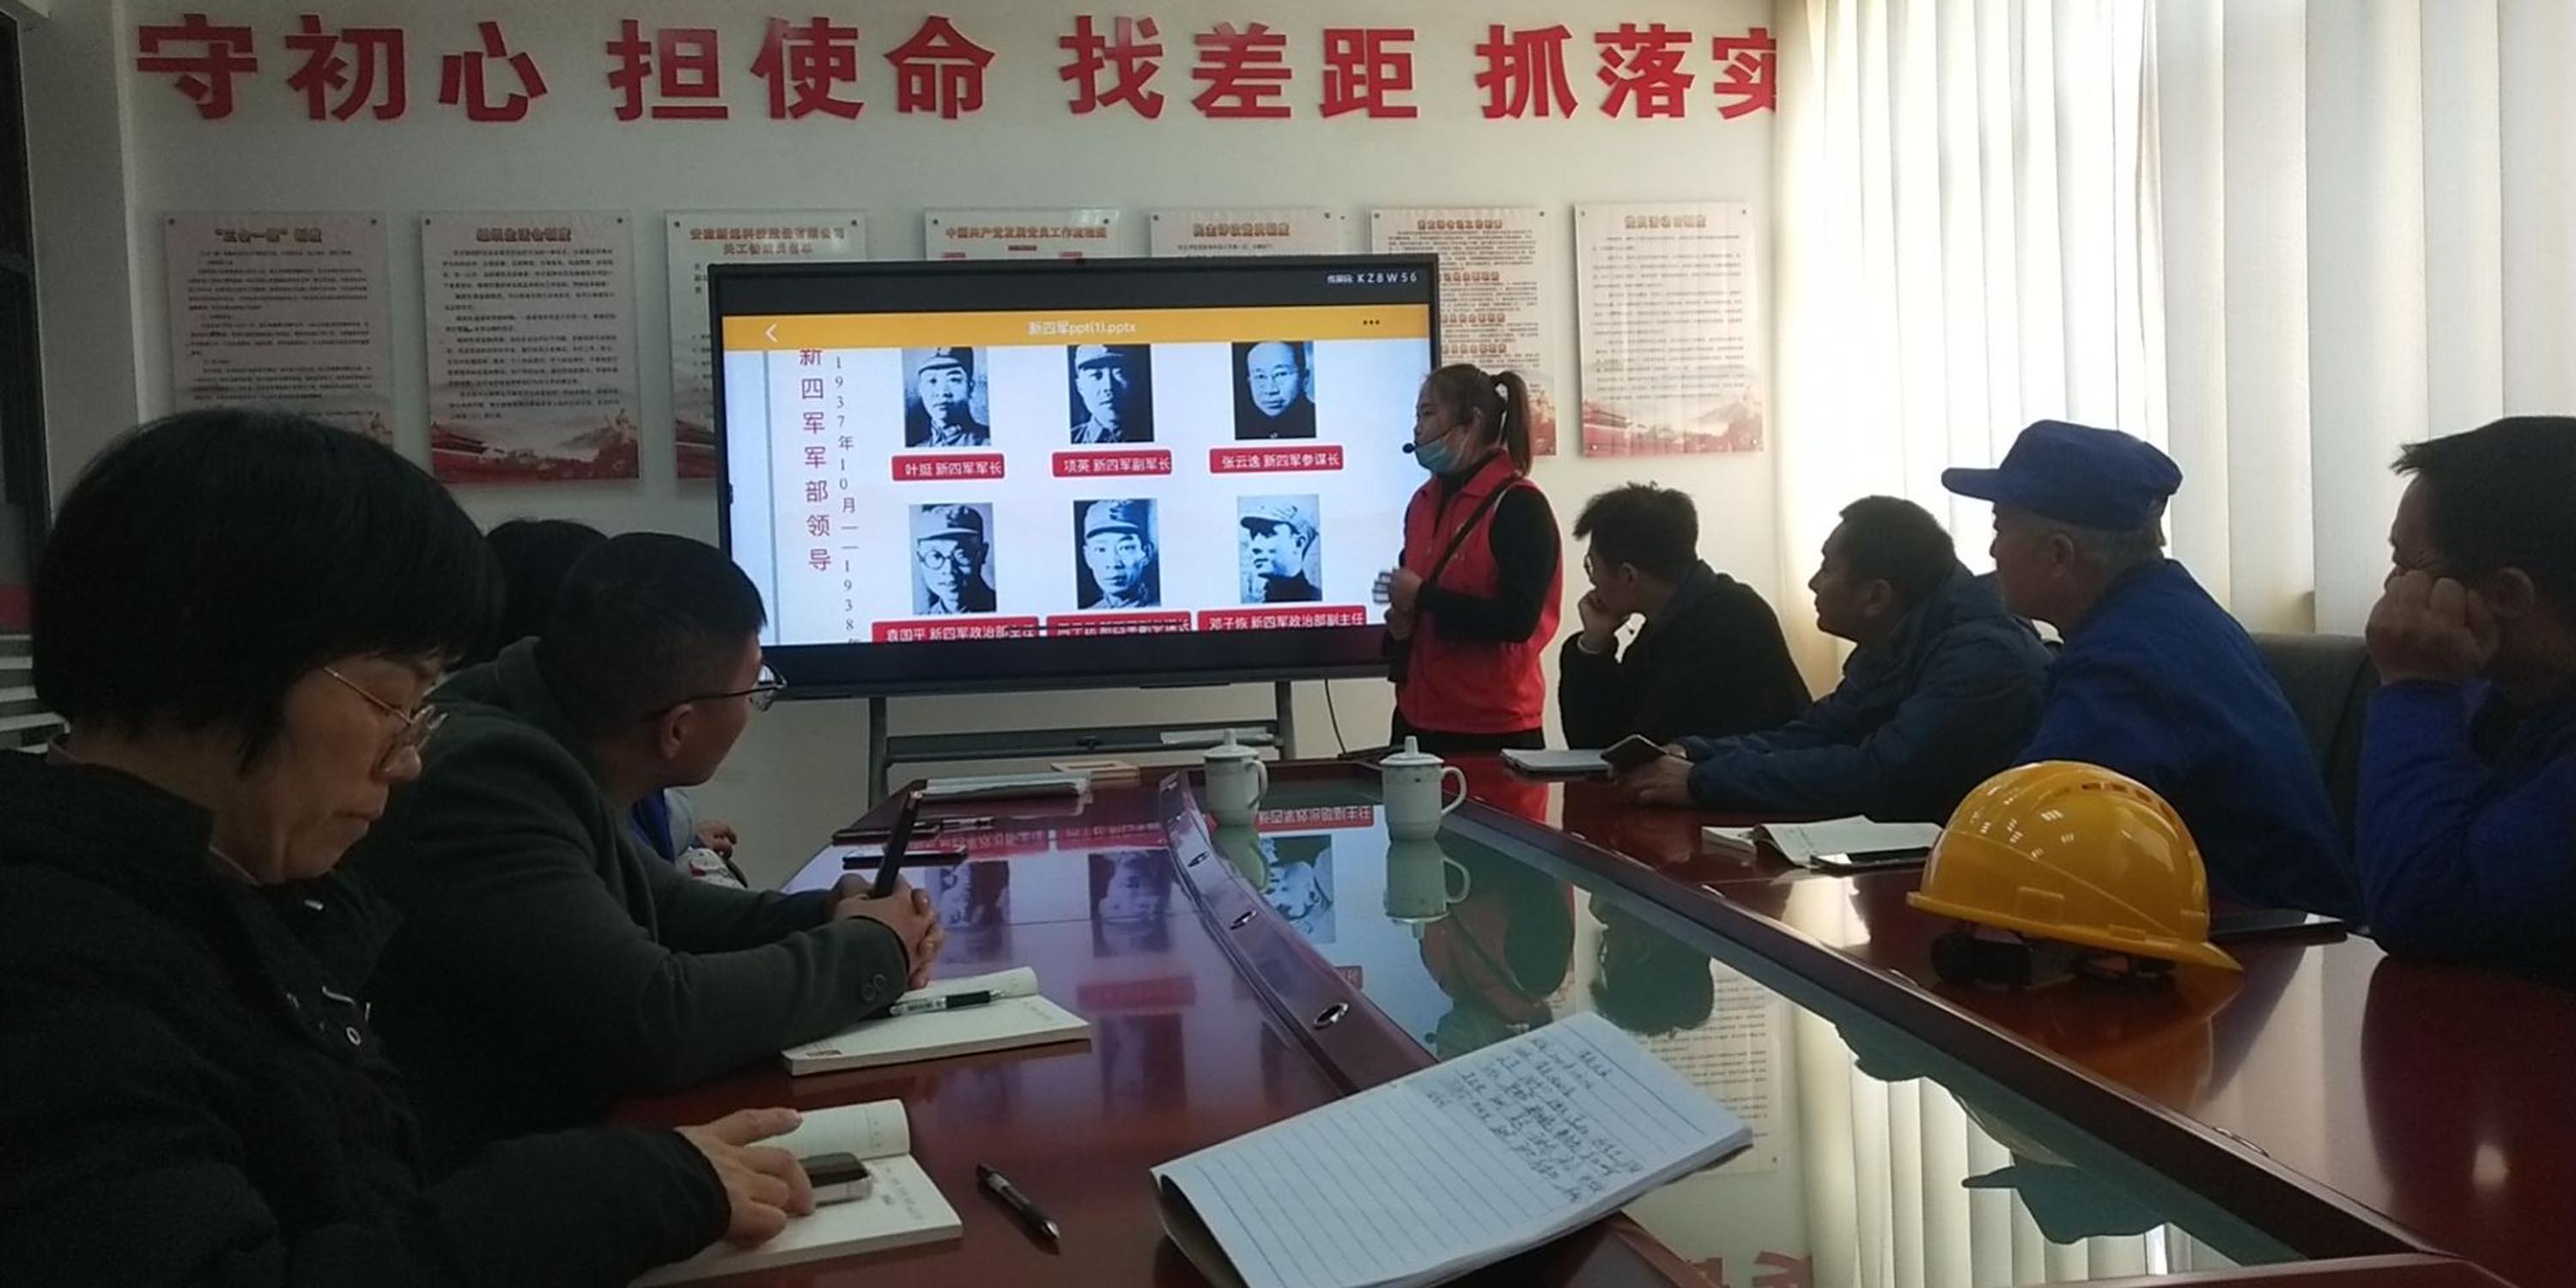 安徽新远科技股份有限公司举行红色文化进企业活动